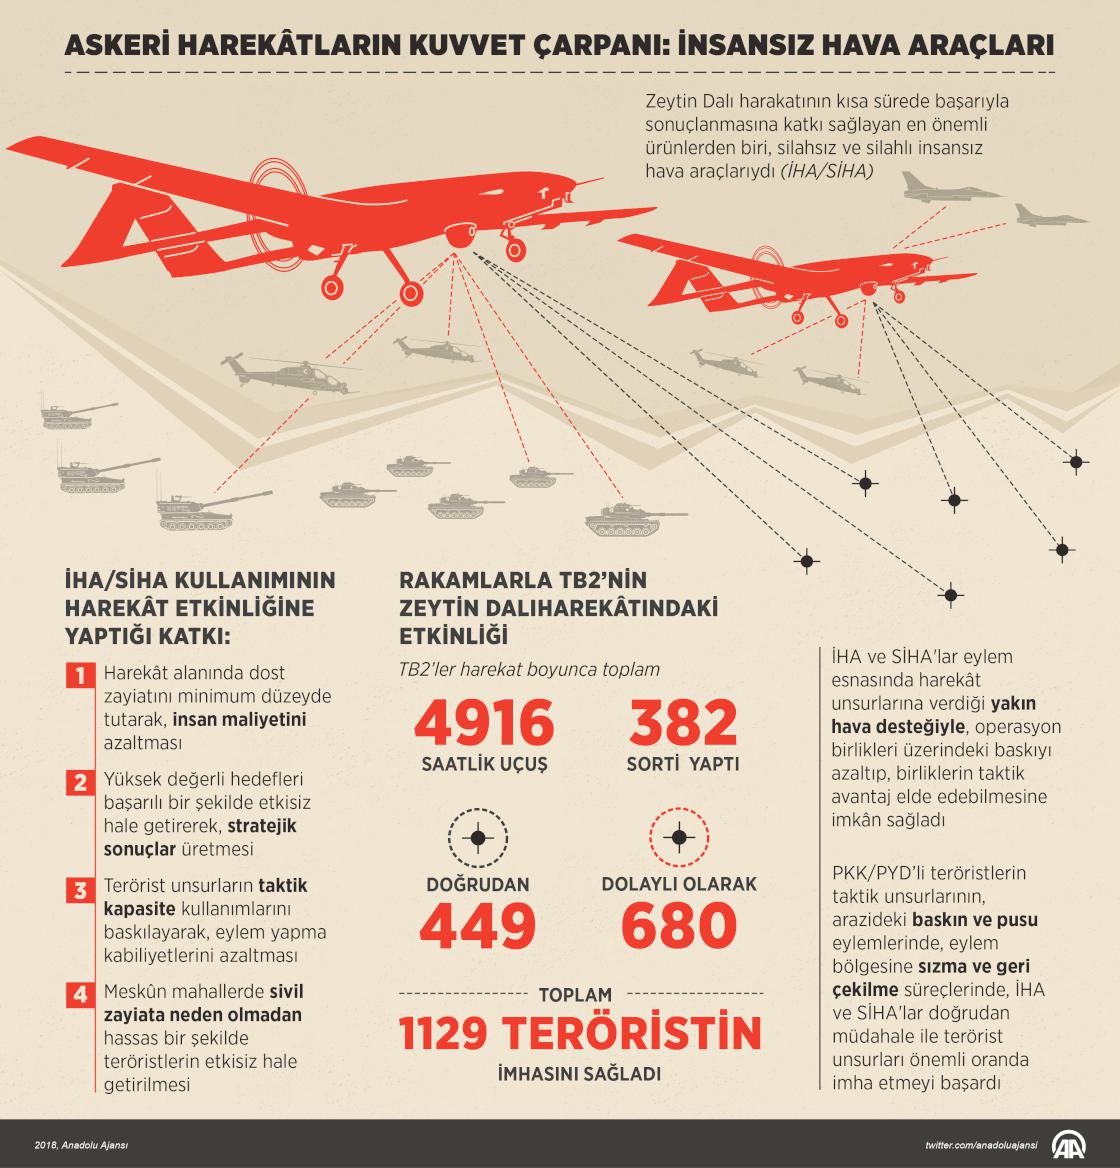 Askeri harekâtların kuvvet çarpanı: İnsansız hava araçları